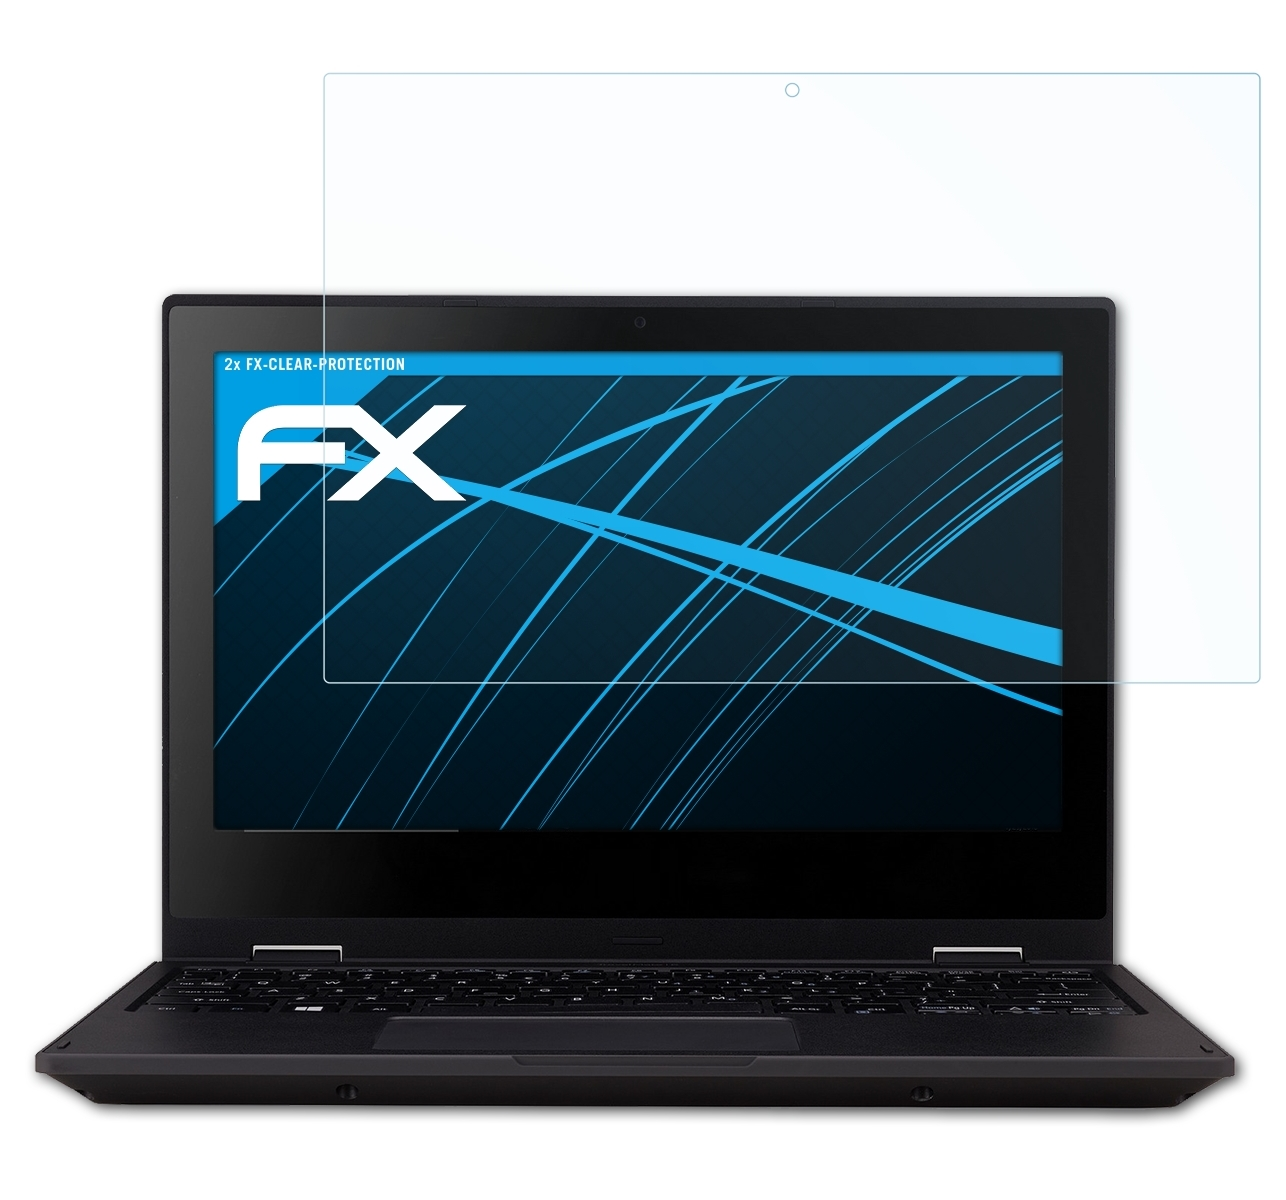 2x TravelMate Acer B1) FX-Clear Spin Displayschutz(für ATFOLIX